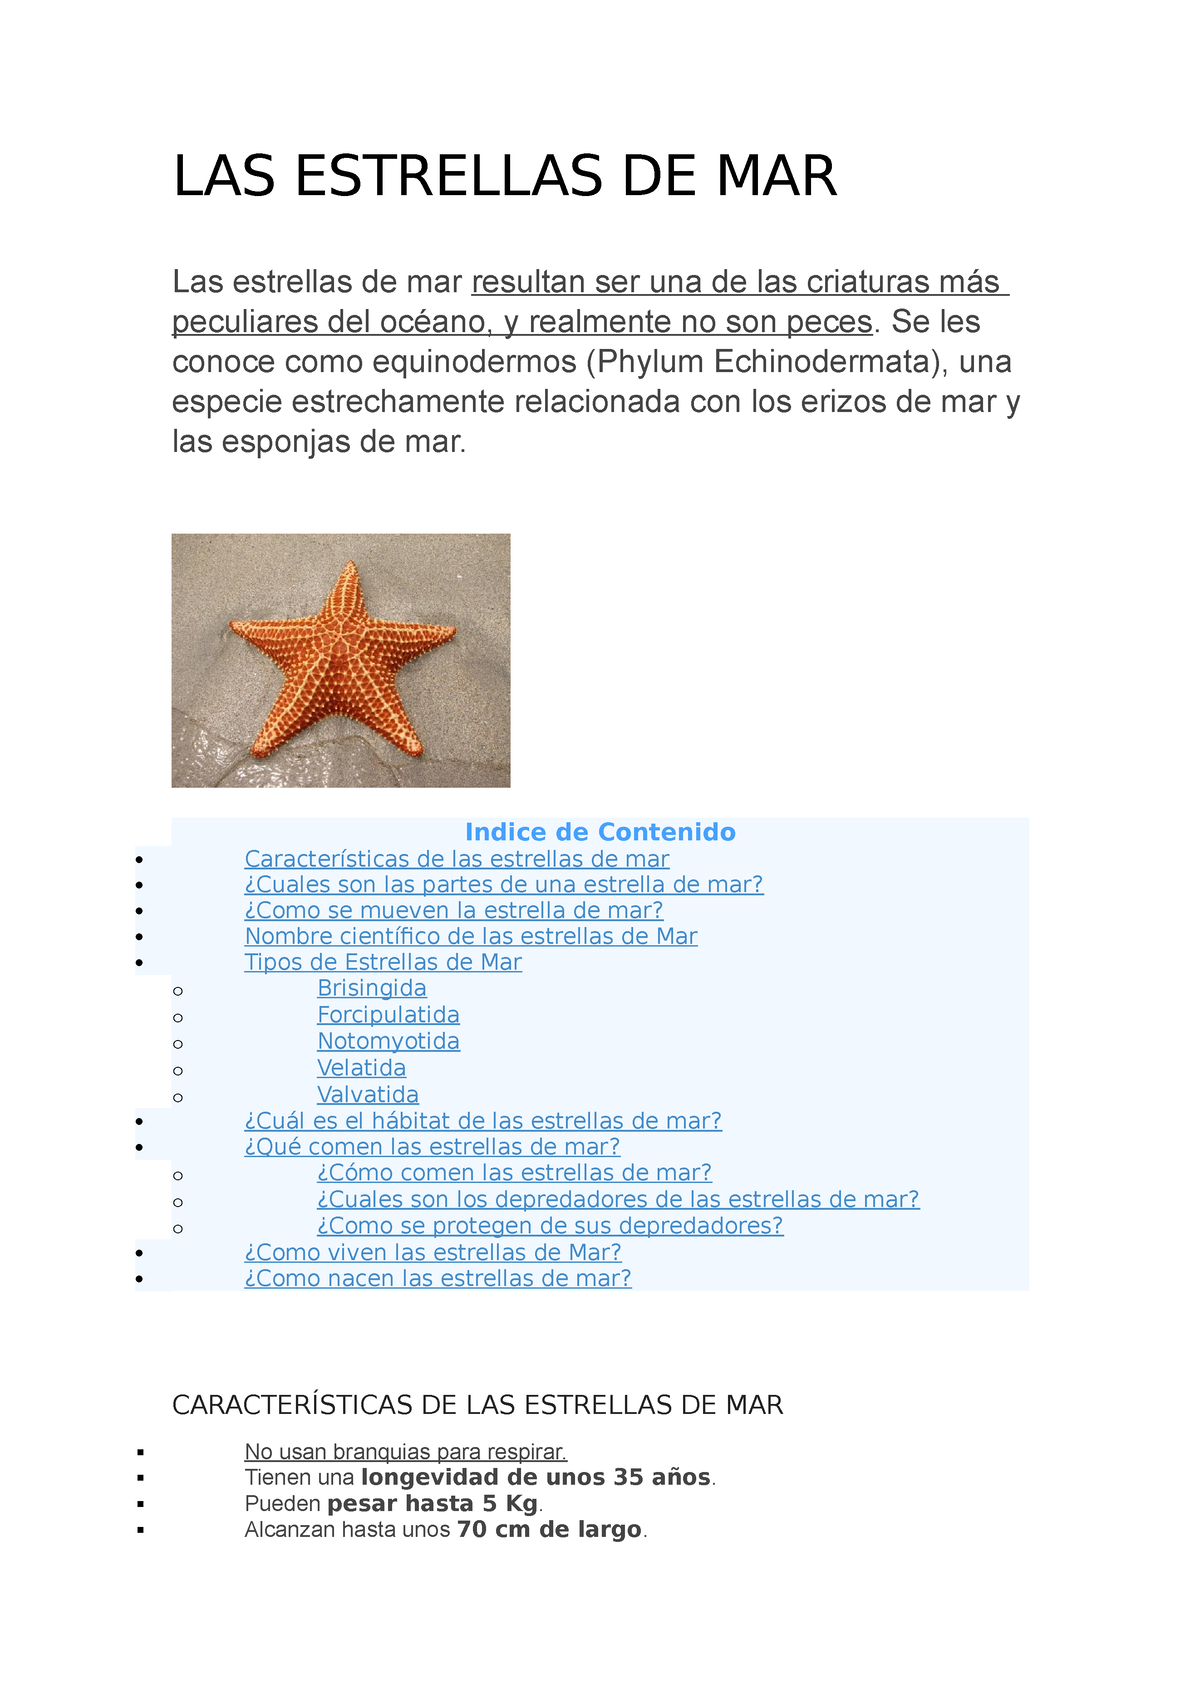 Resumen de 22+ artículos: como comen las estrellas de mar [actualizado ...